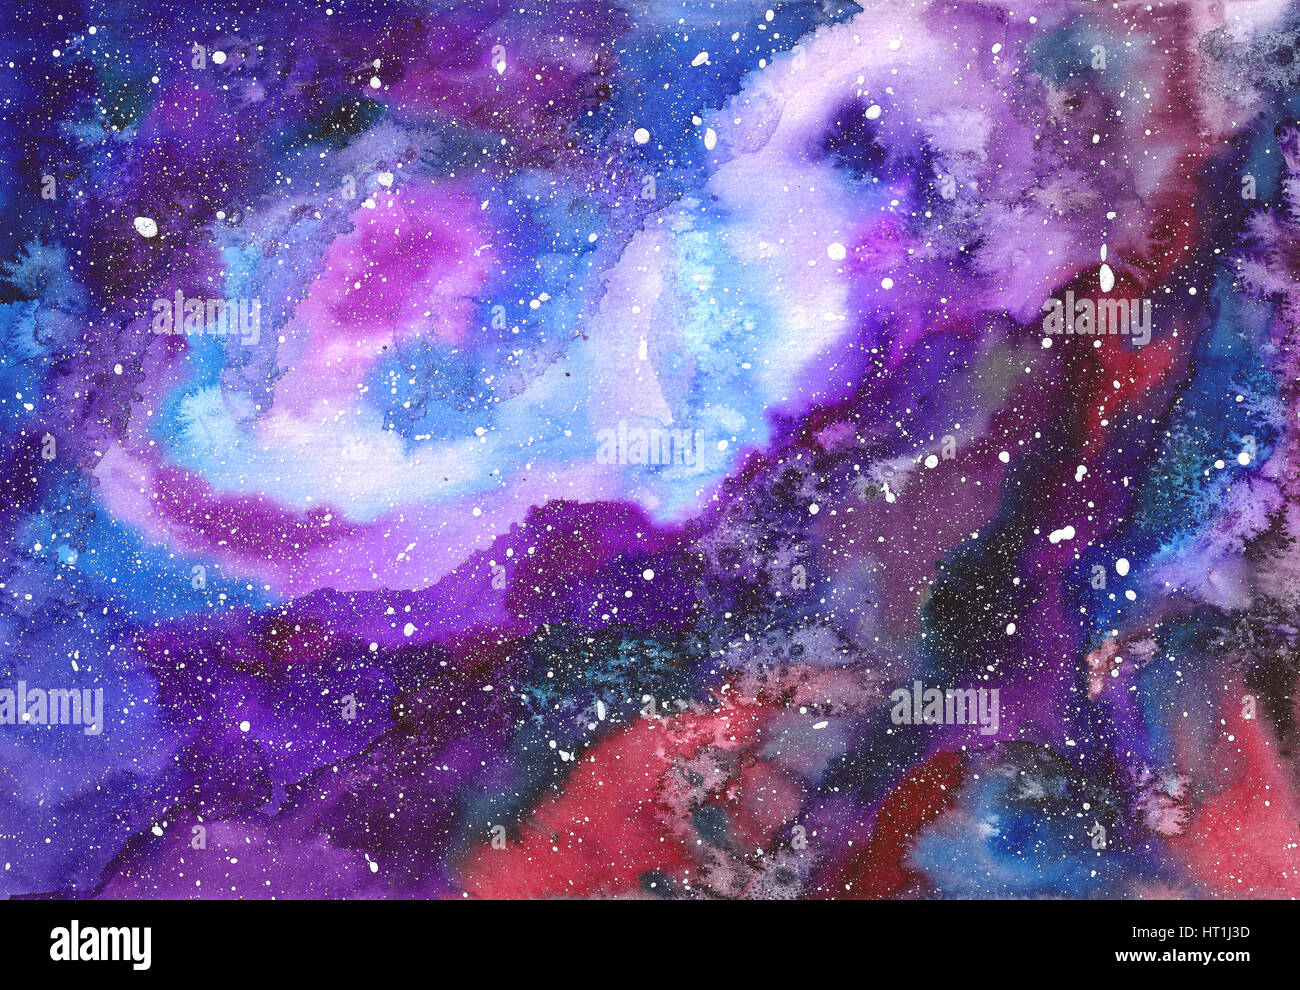 Bạn muốn khám phá thiên hà và vẽ ra những hạt giống đầy màu sắc không? Chỉ cần xem bức tranh này, bạn sẽ bị cuốn hút với khung cảnh đầy tràn sáng tạo và mơ mộng. Hãy để cho thế giới của bạn tràn ngập màu sắc tươi đẹp từng giọt với những hạt giống thiên hà đầy lạ thường.